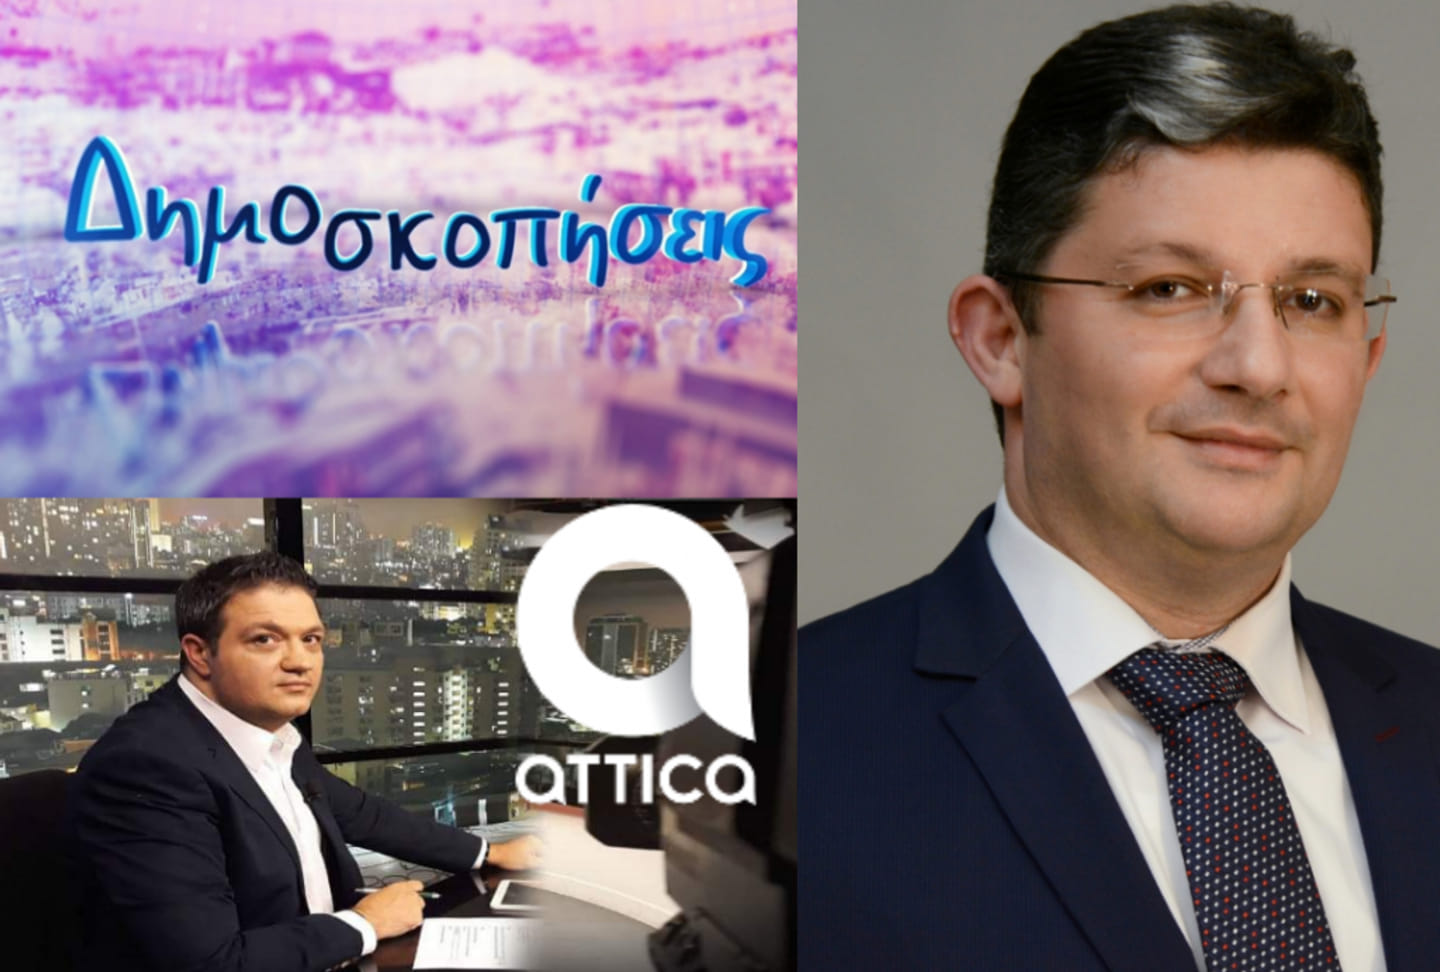 Σπύρος Βρεττός στο Attica TV: “Θα αλλάξουμε την πόλη μας με σκληρή δουλειά. Το χρωστάμε στα παιδιά μας!”